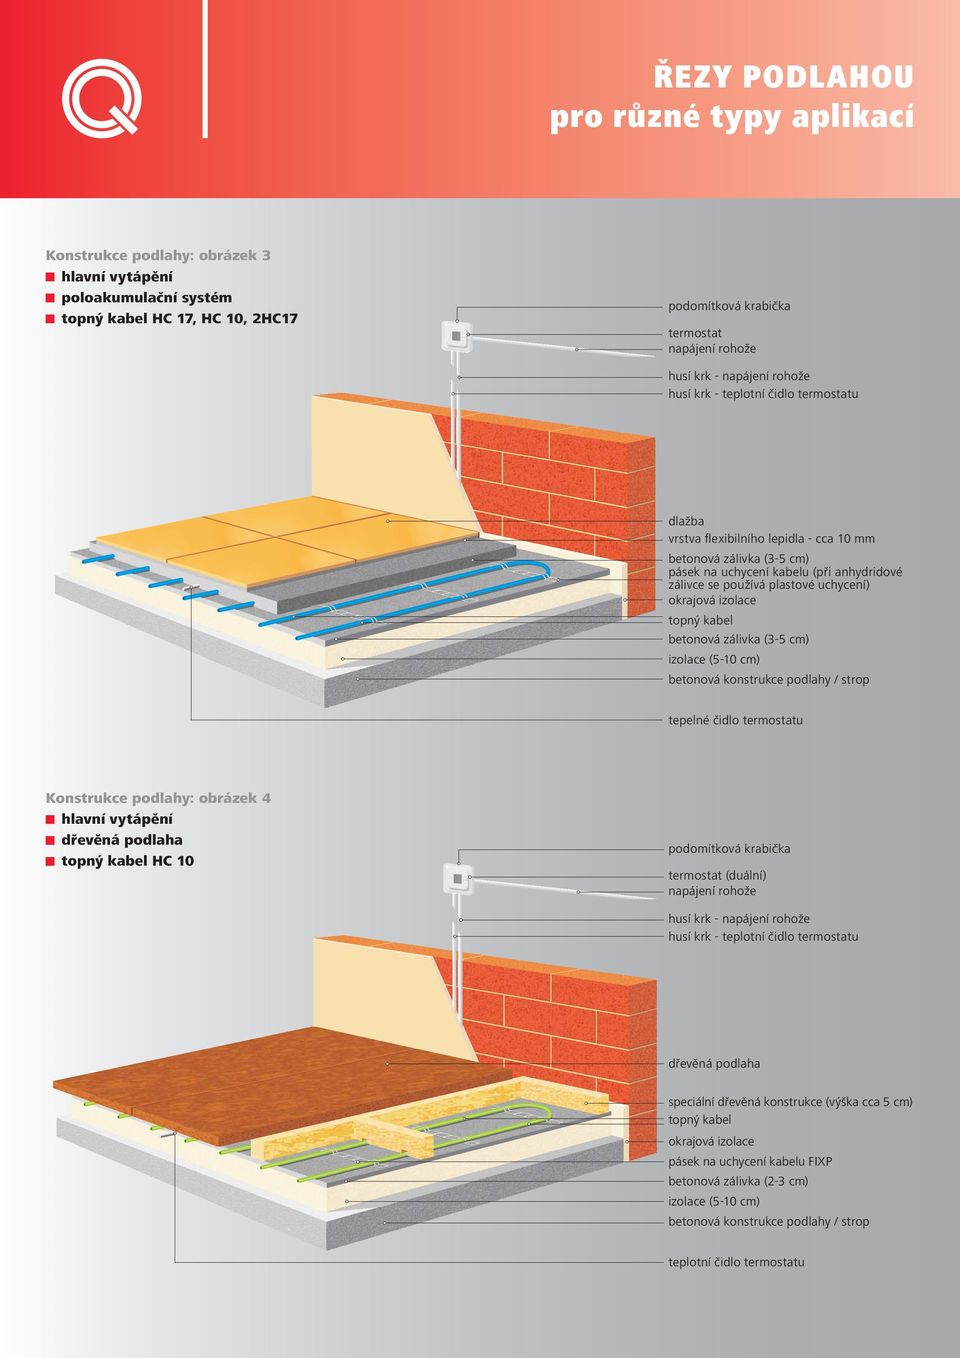 uchycení) okrajová izolace topný kabel betonová zálivka (3-5 cm) izolace (5-10 cm) betonová konstrukce podlahy / strop tepelné čidlo termostatu Konstrukce podlahy: obrázek 4 hlavní vytápění dřevěná